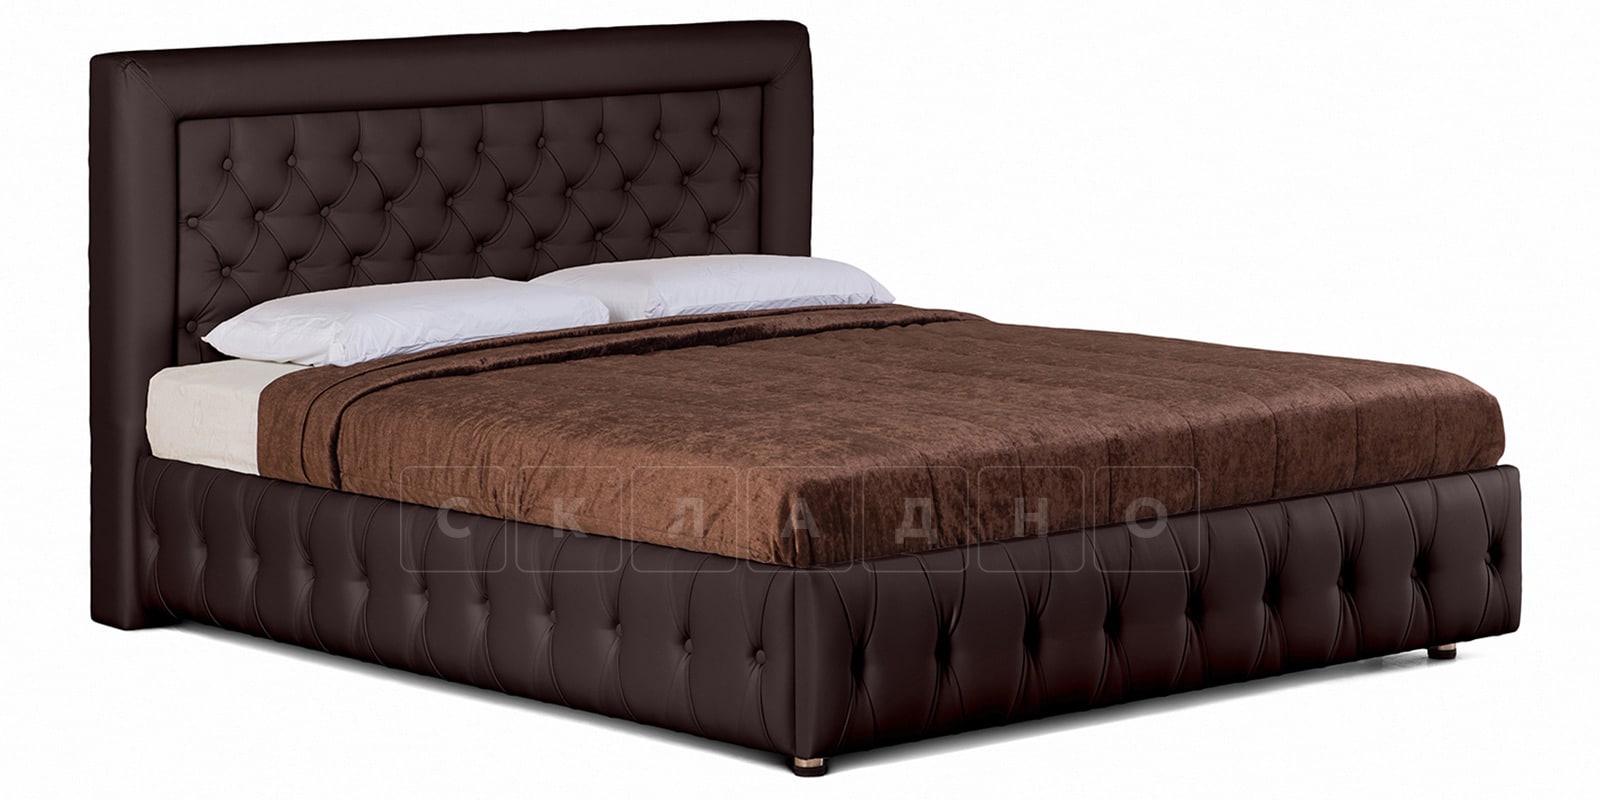 Мягкая кровать Малибу 160см экокожа шоколадного цвета вариант 7-2 фото 1 | интернет-магазин Складно